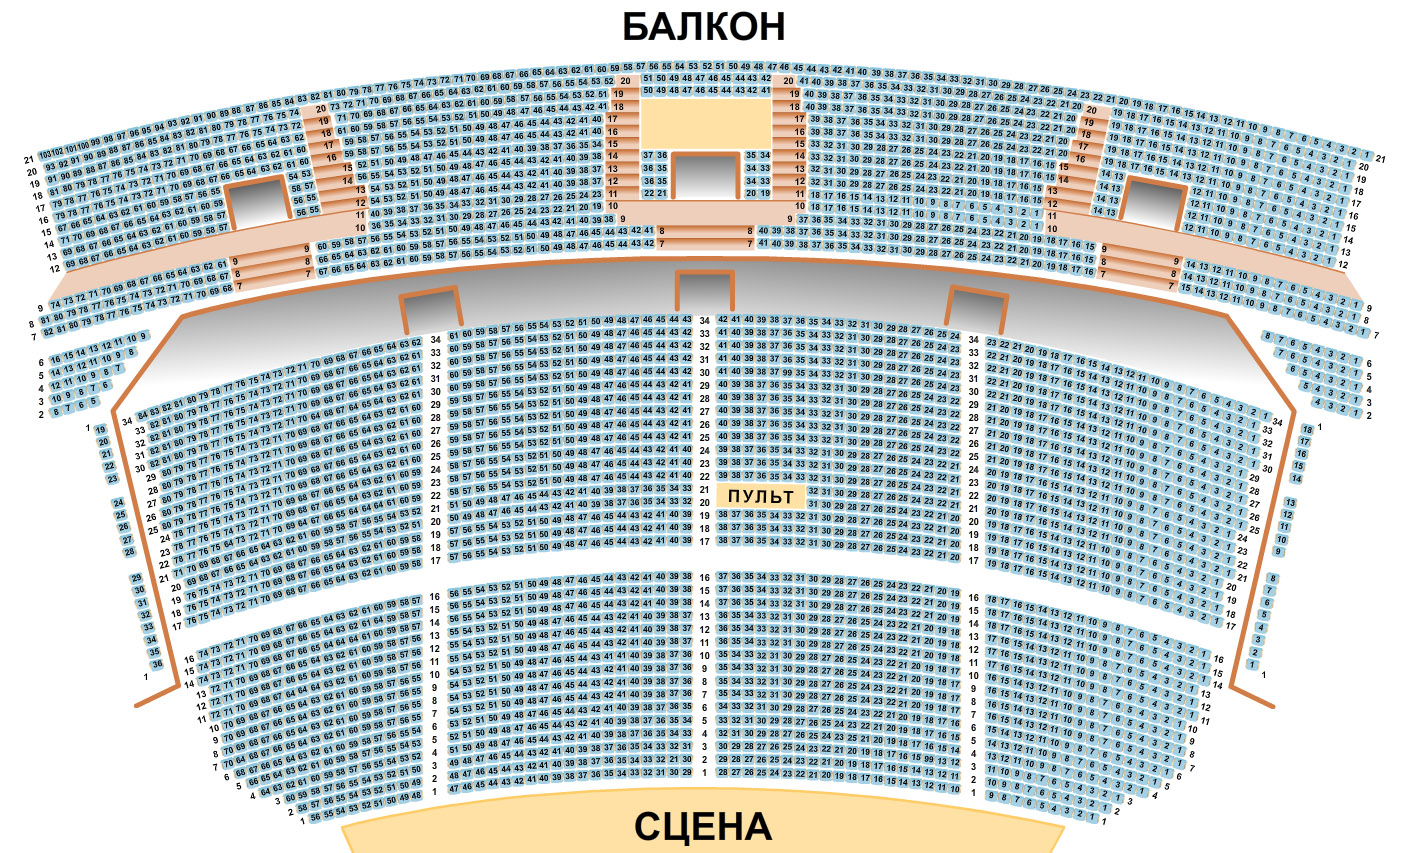 схема зала кремлевского дворца с местами на концерт